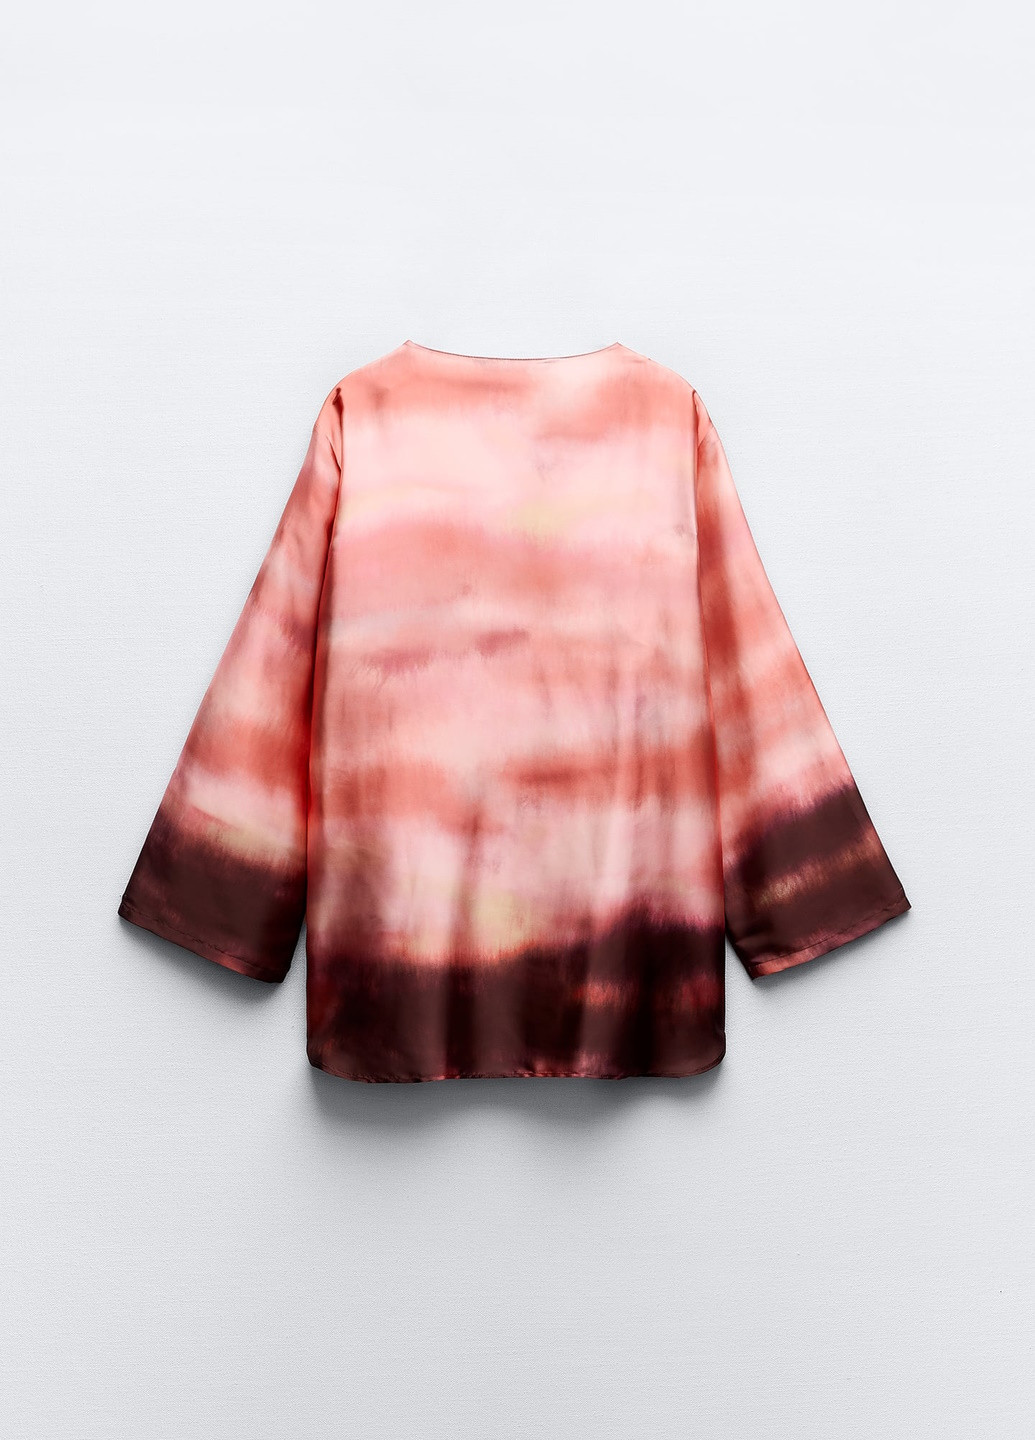 Комбинированная демисезонная блузка Zara